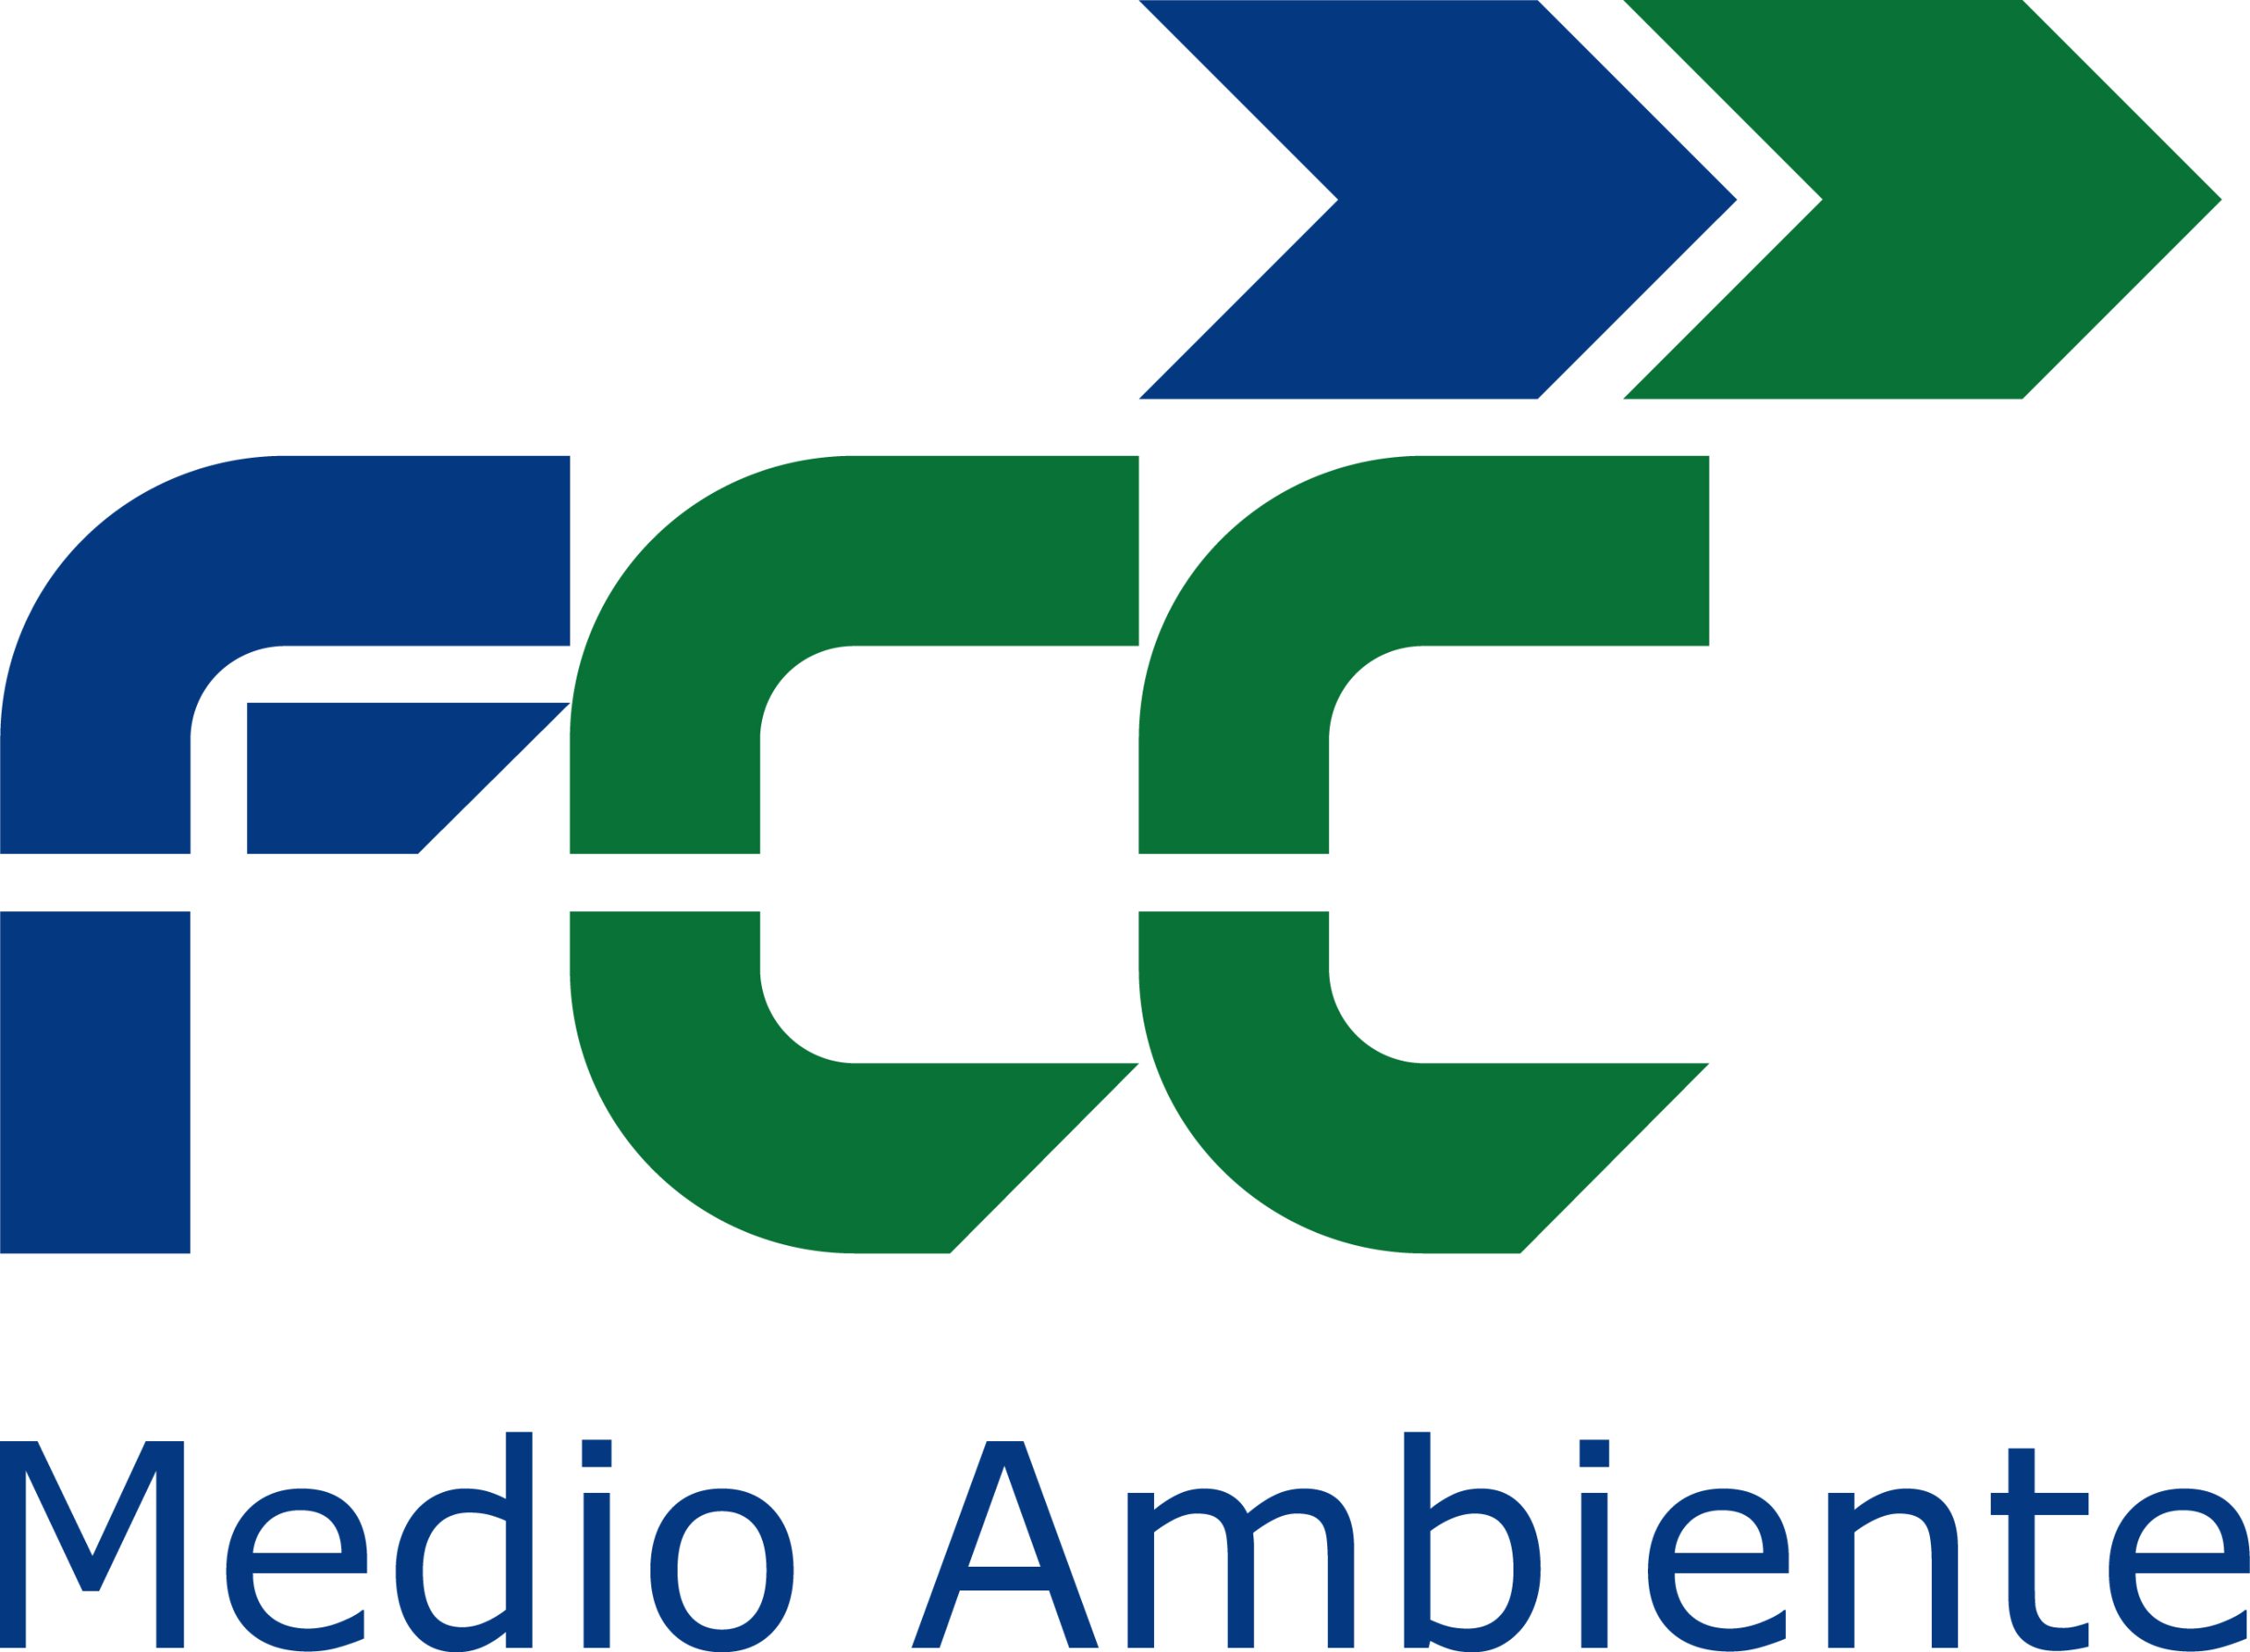 FCC MEDIO AMBIENTE S.A